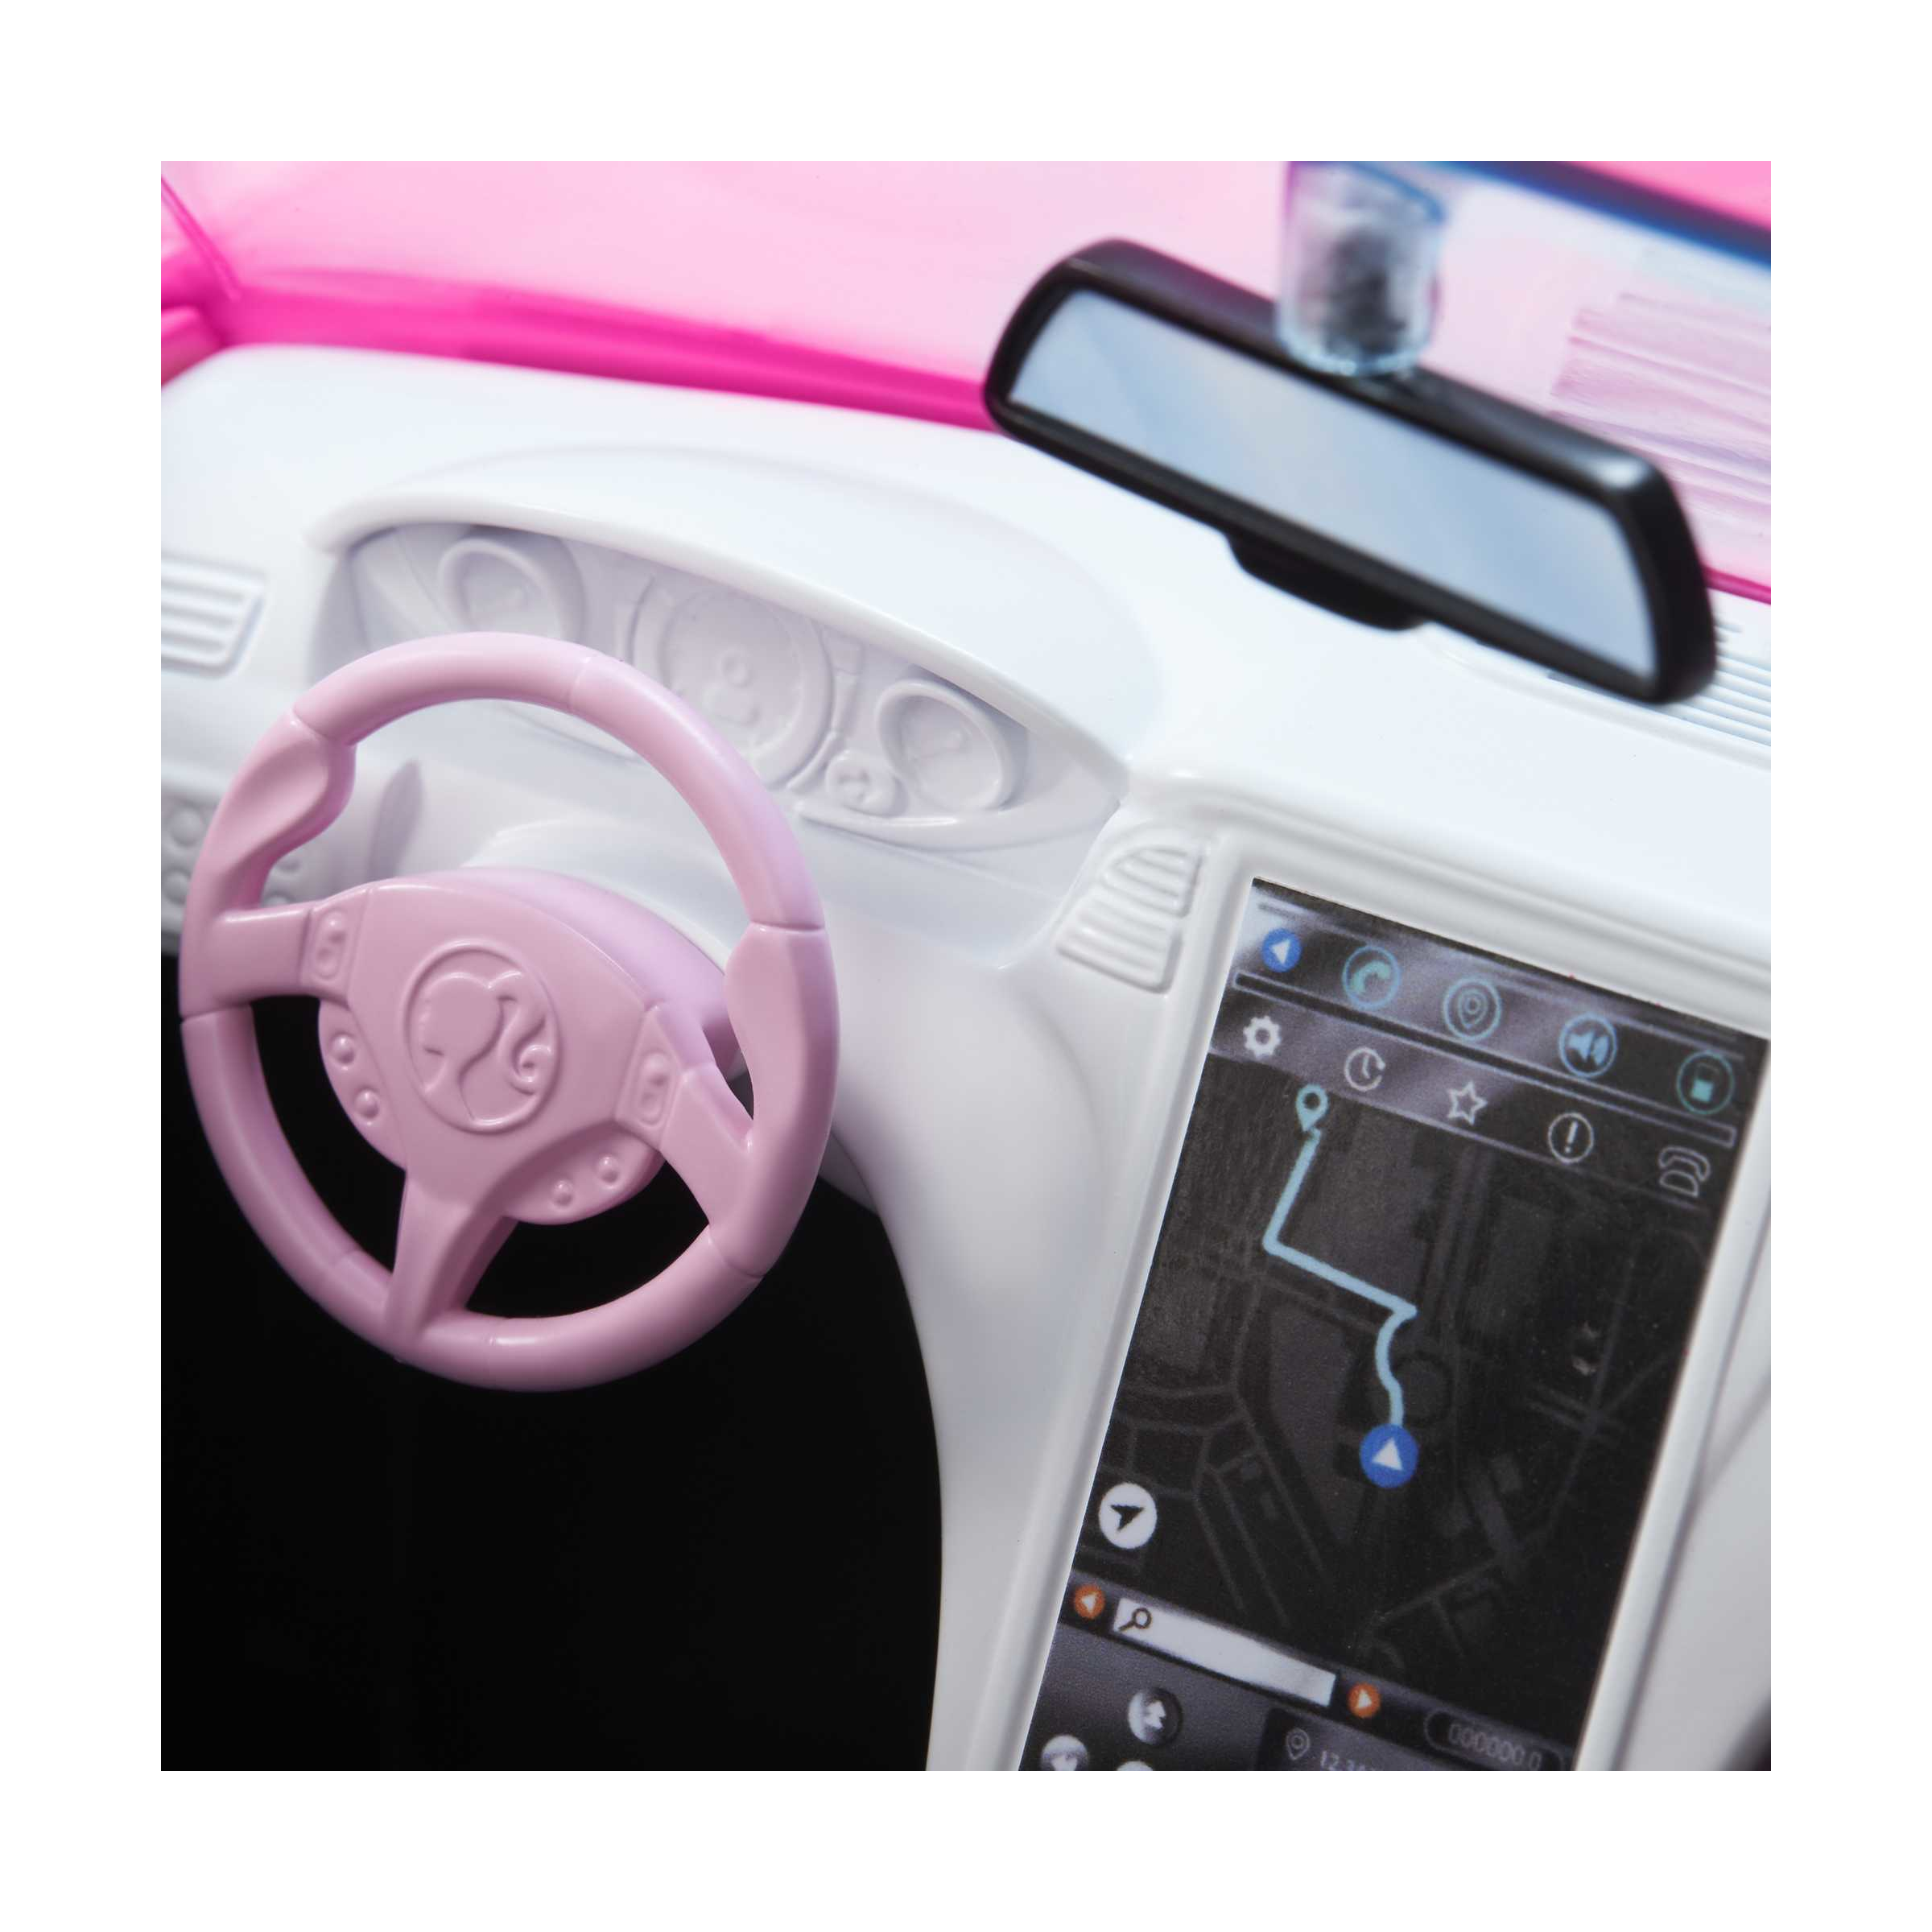 Barbie, cabrio veicolo decapottabile rosa a due posti con ruote funzionanti e dettagli realistici, giocattolo per bambini 3+ anni, hbt92 - Barbie